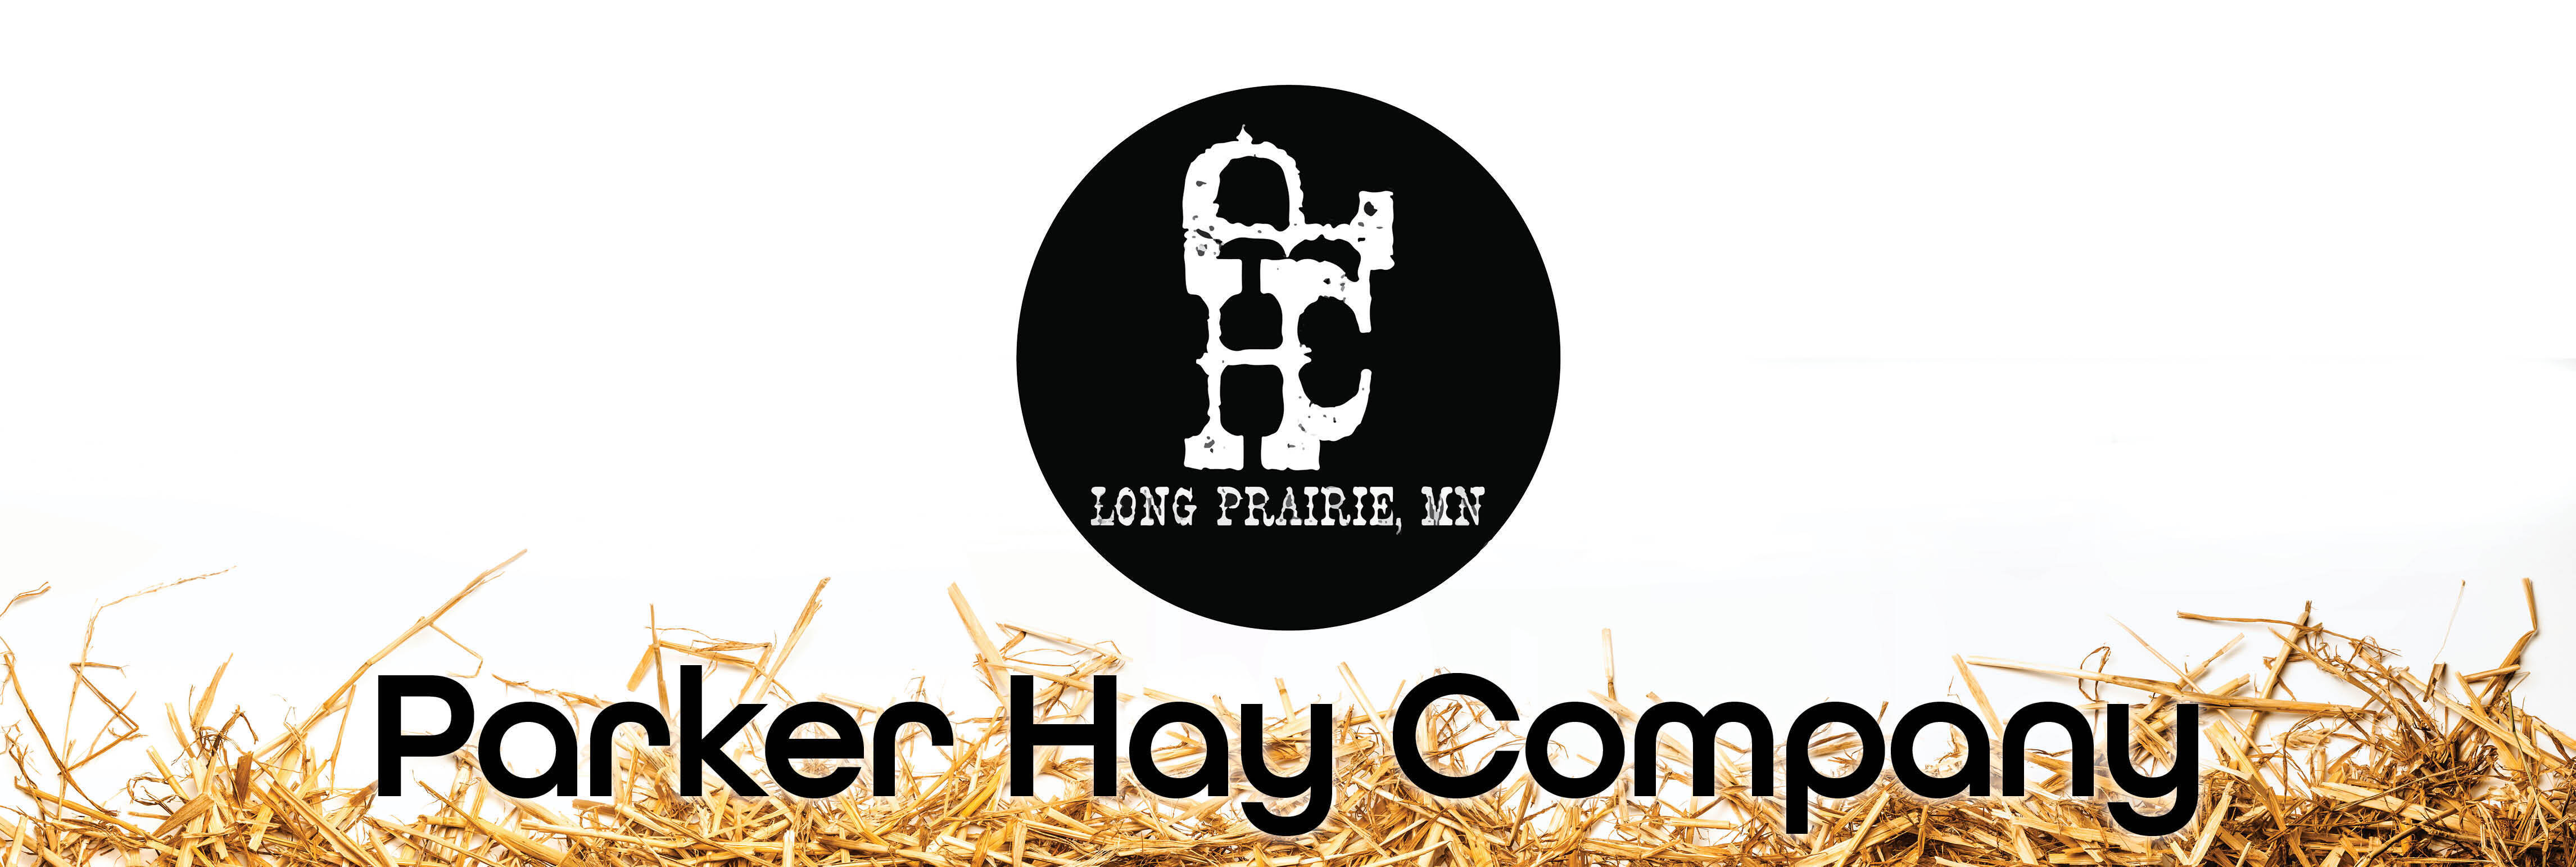 Parker Hay Company 